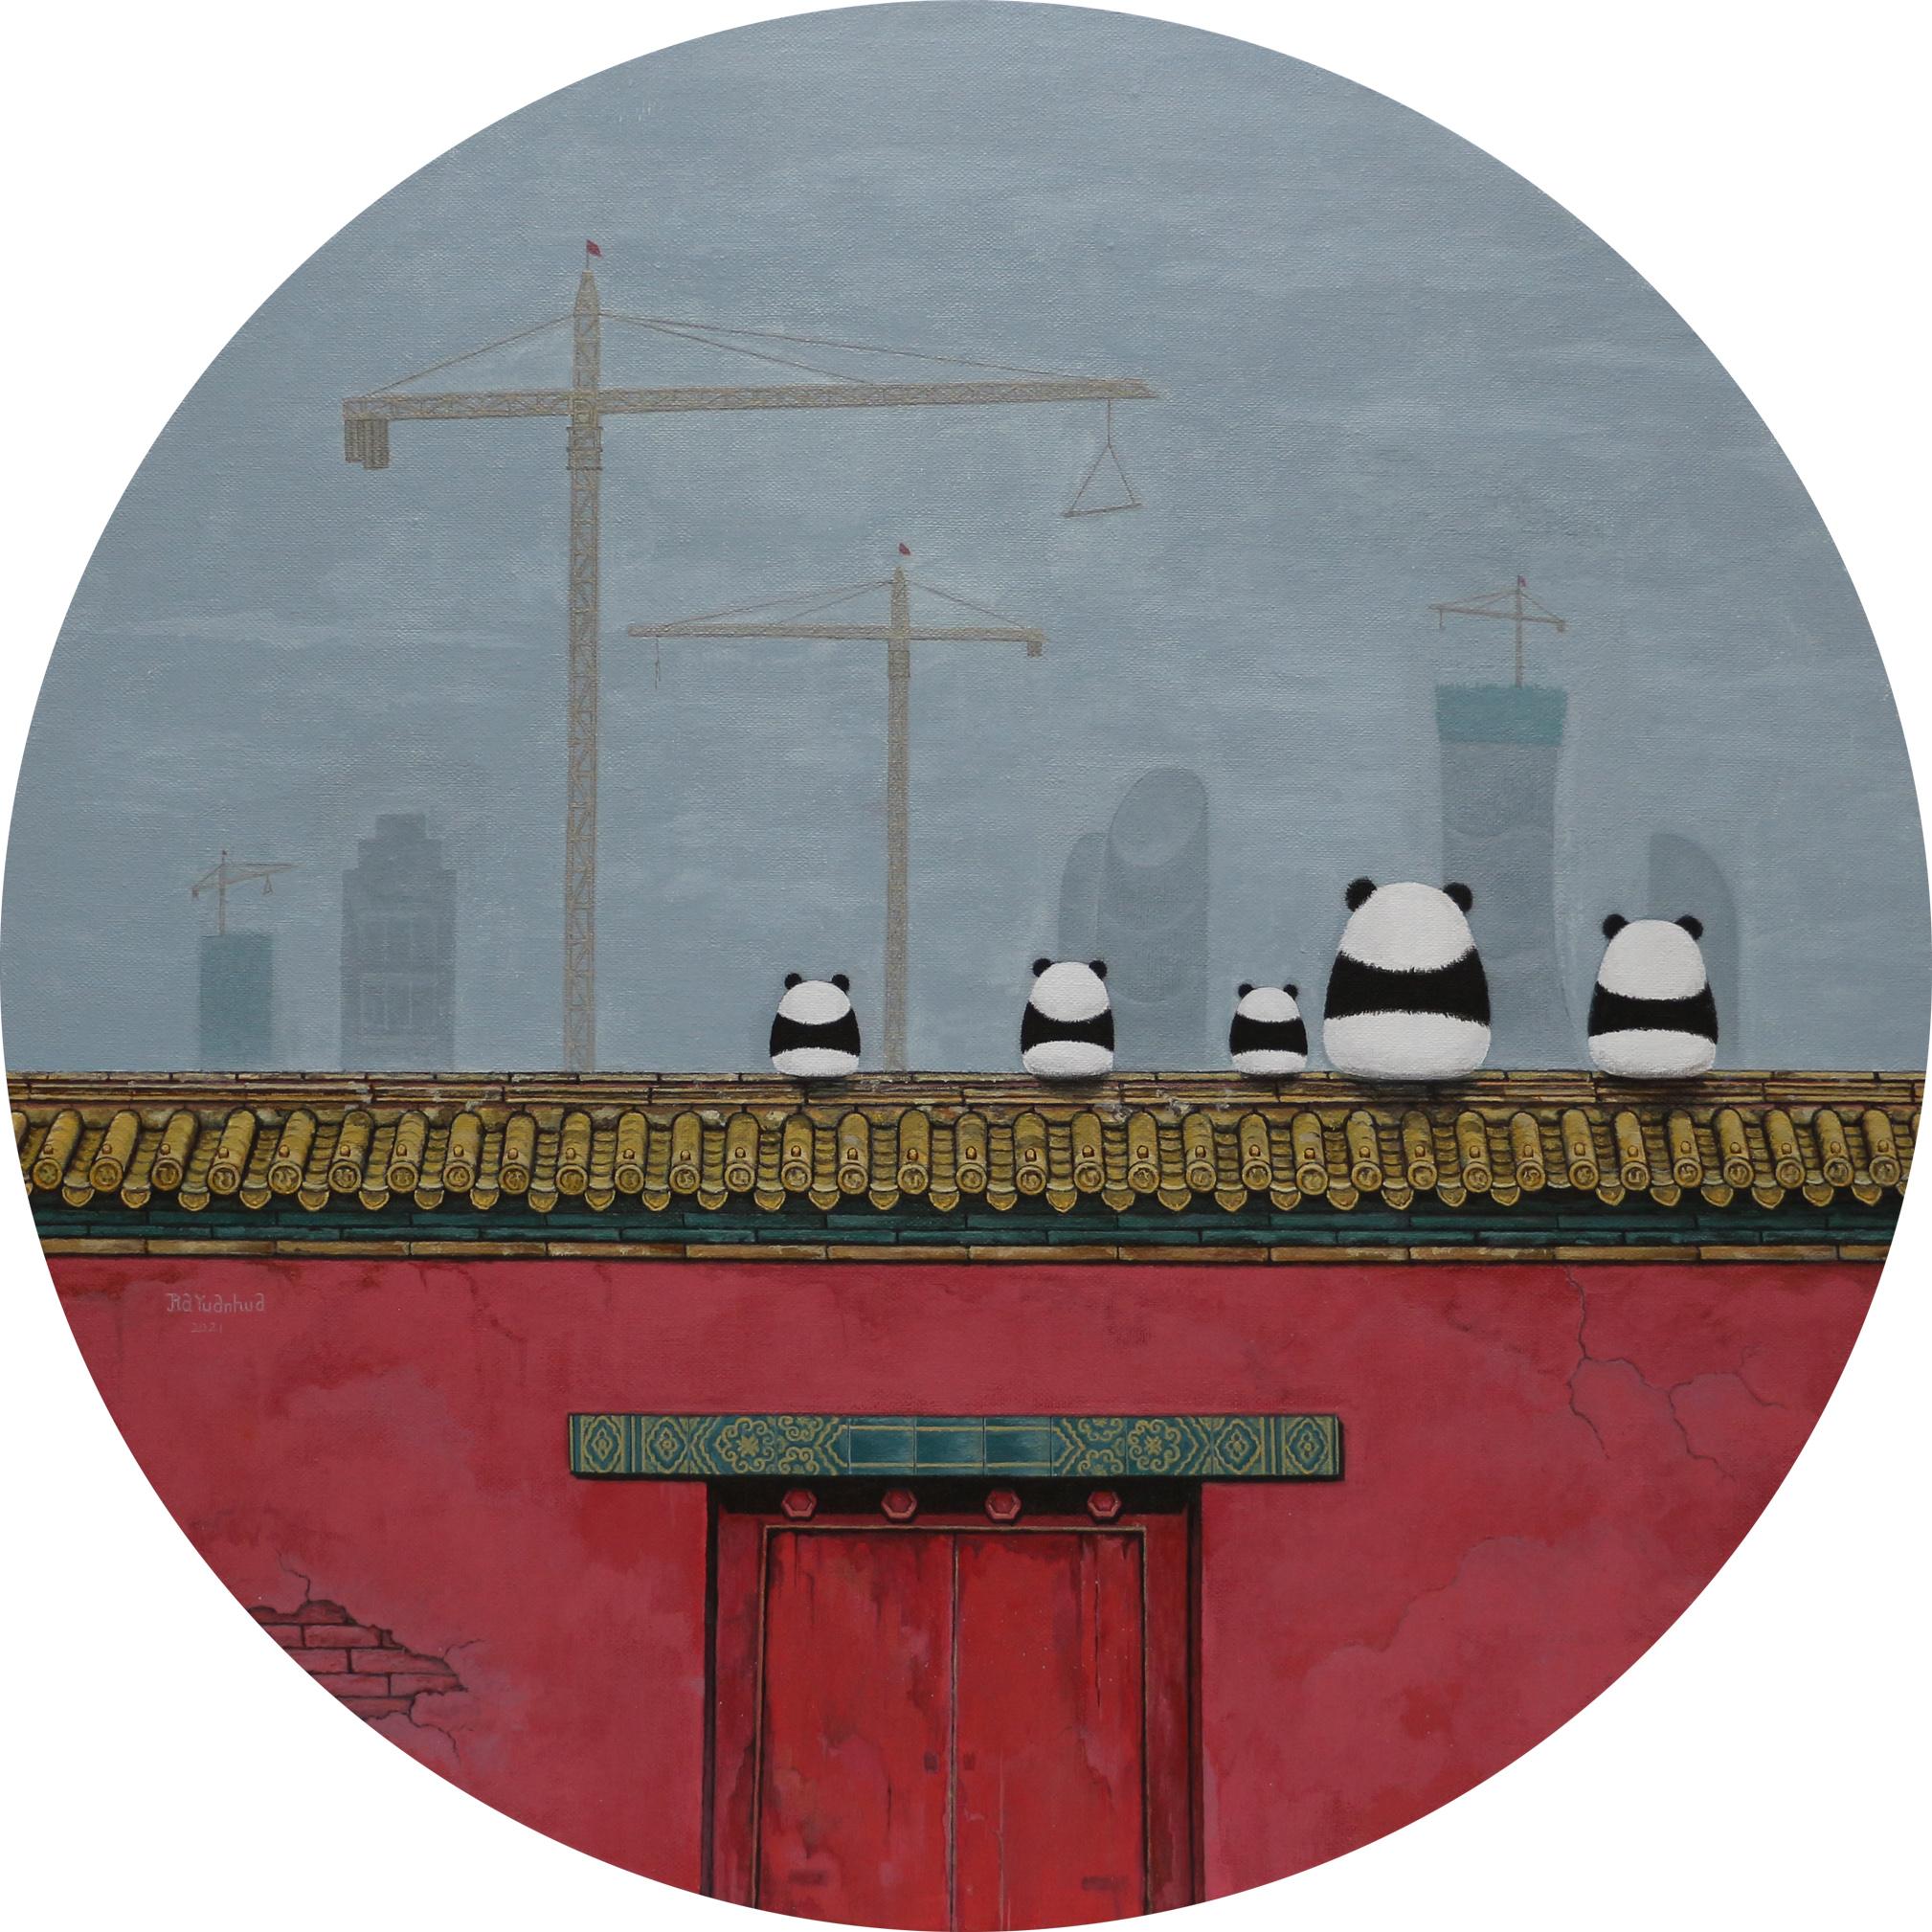 Chinesische zeitgenössische Kunst von Jia Yuan-Hua – Sightseeing No.7